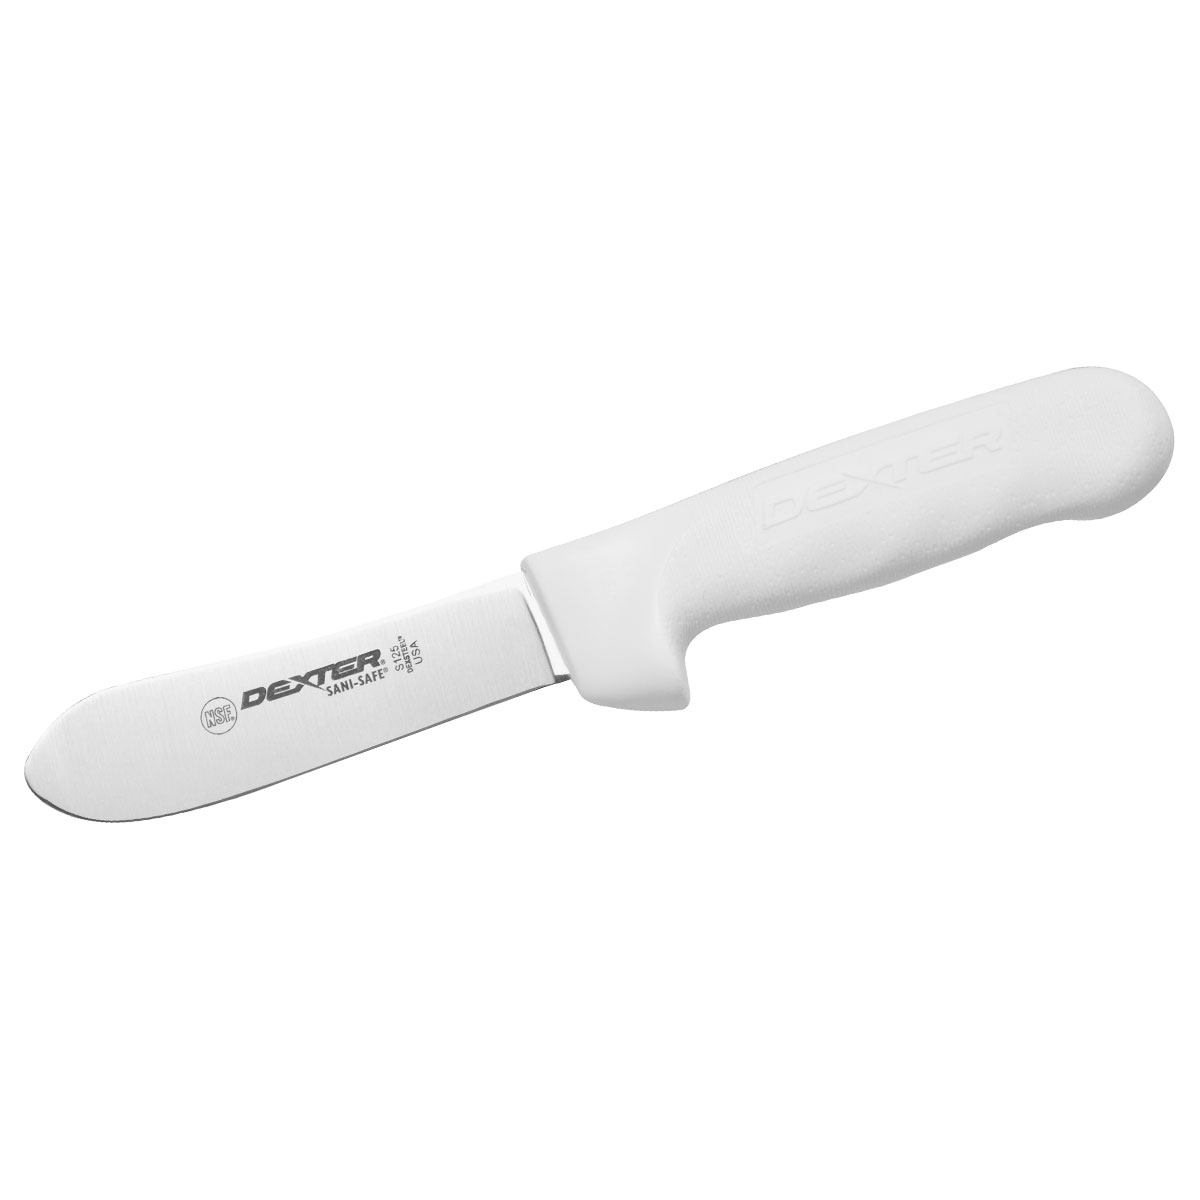 Dexter Gut & Slimming Knife, 11cm (4 1/2) - White